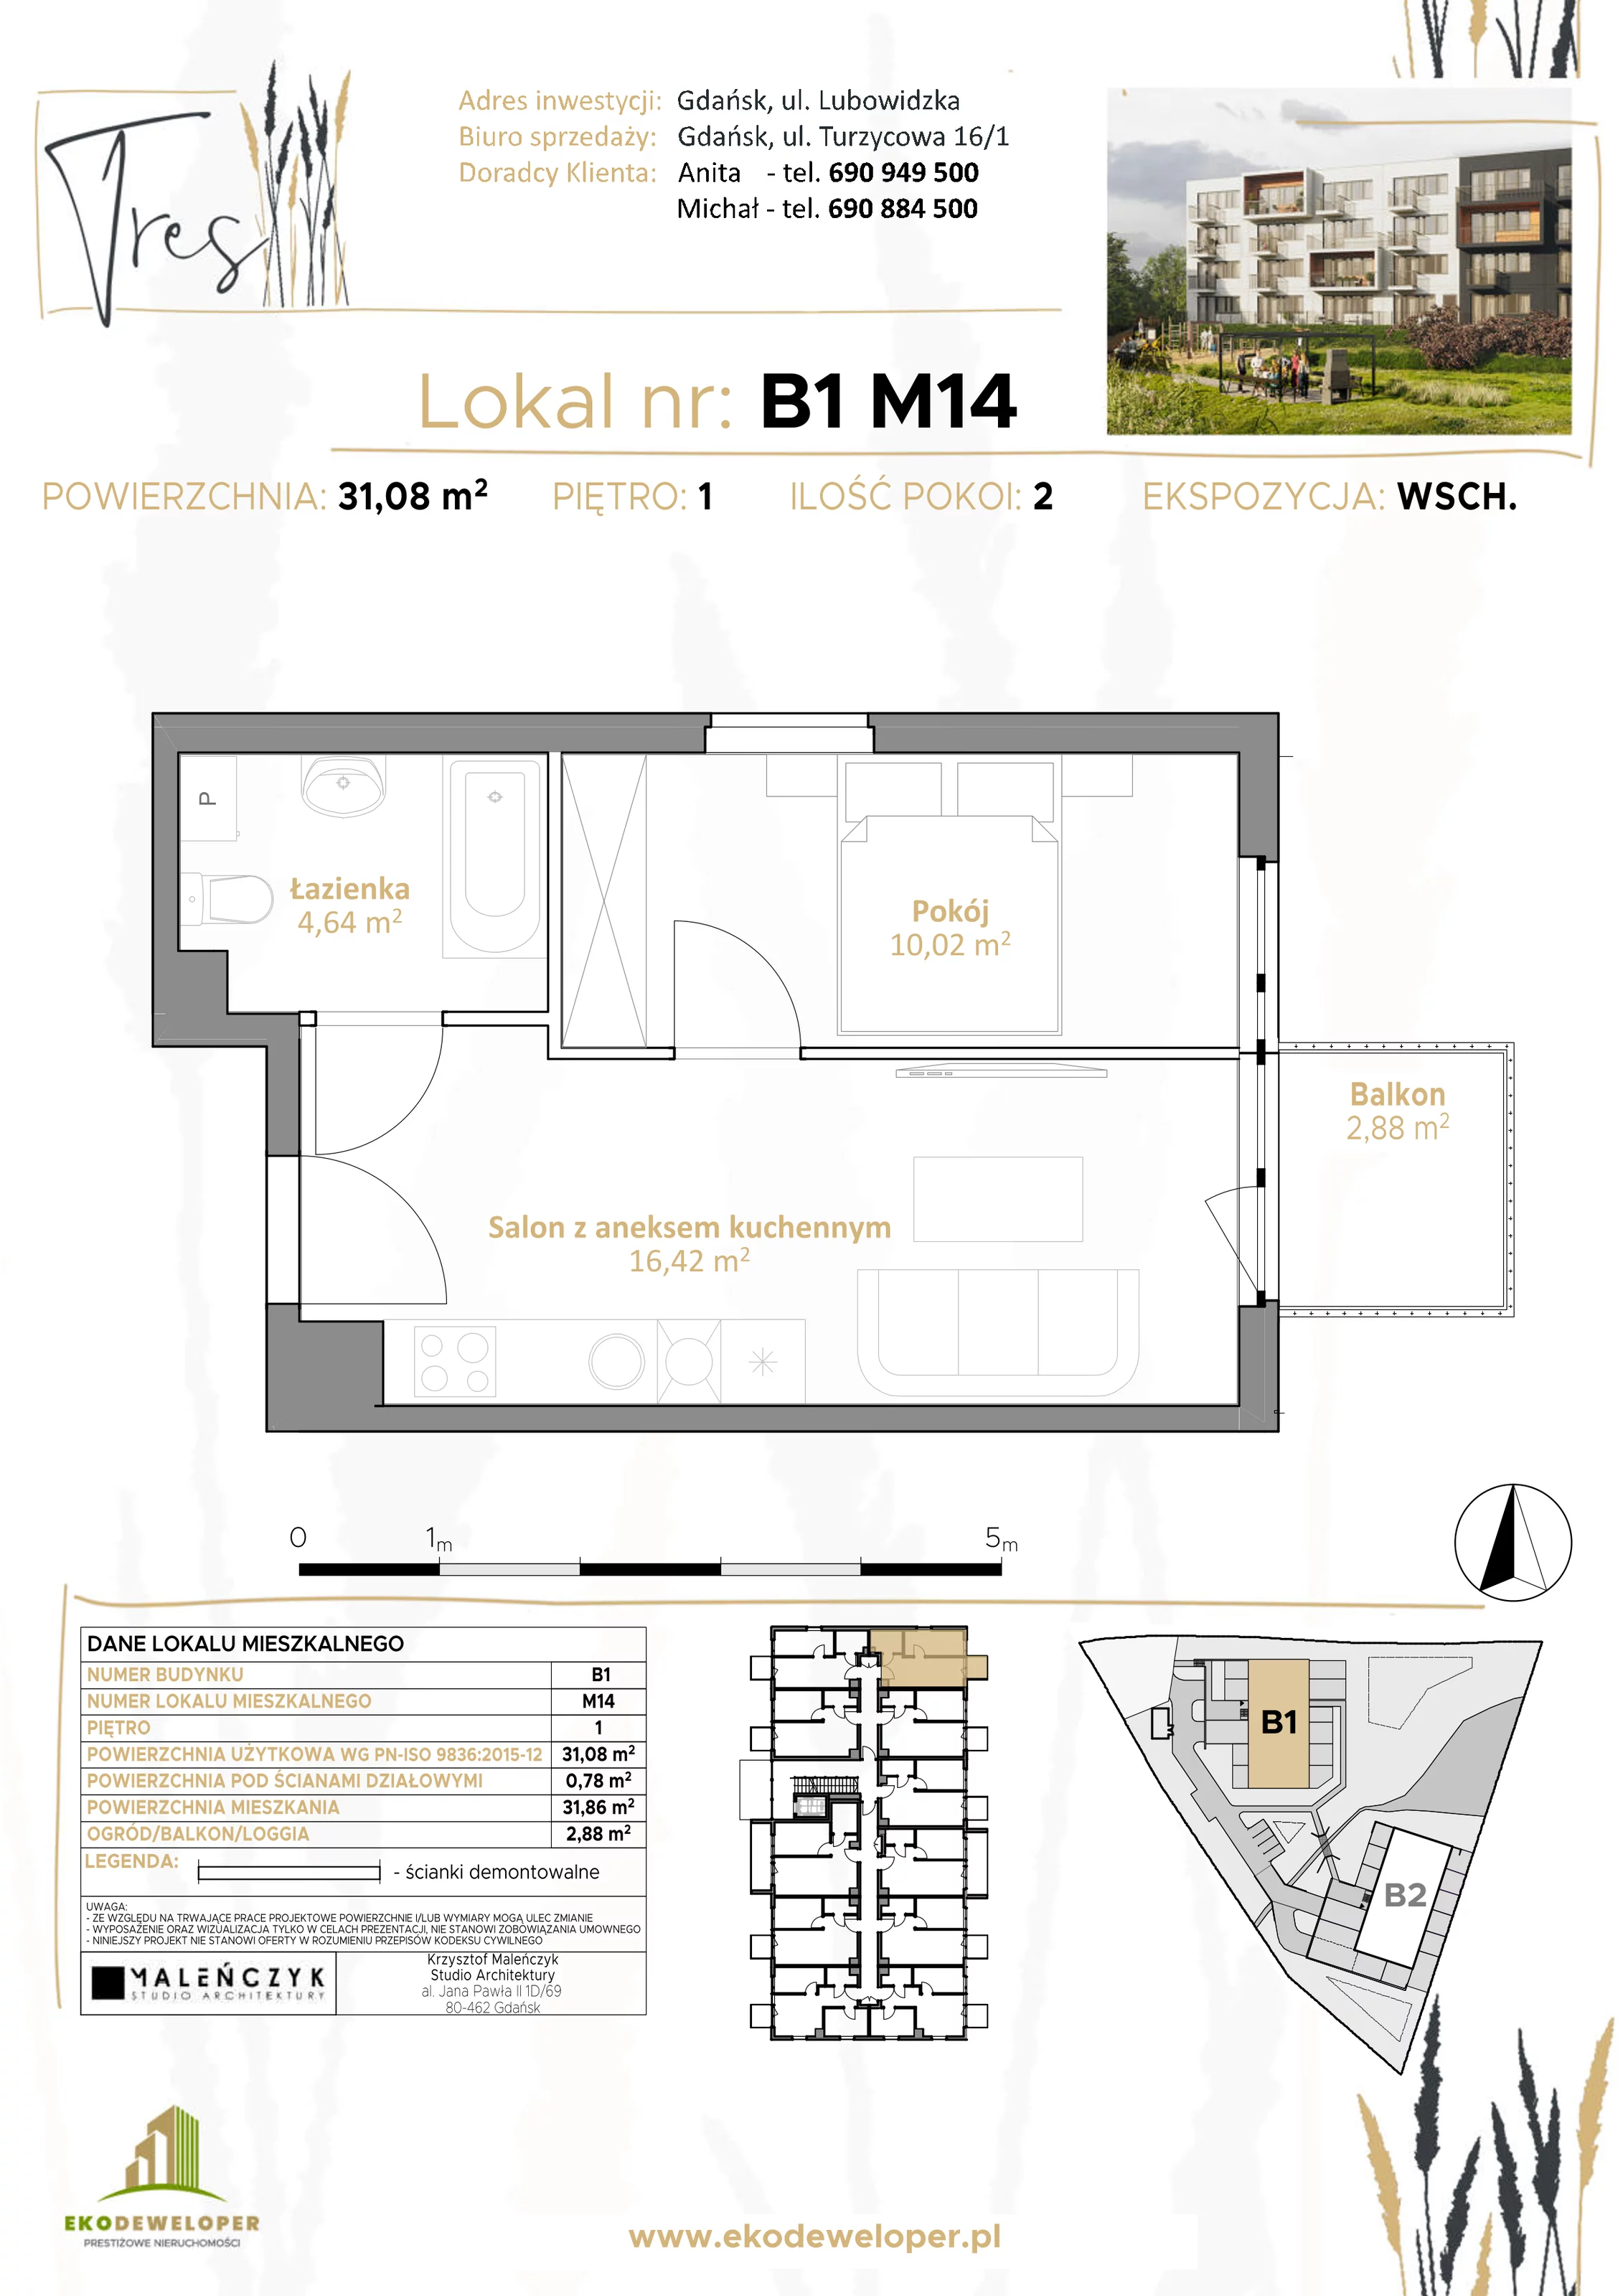 Mieszkanie 31,08 m², piętro 1, oferta nr B1.M14, Tres, Gdańsk, Jasień, ul. Lubowidzka